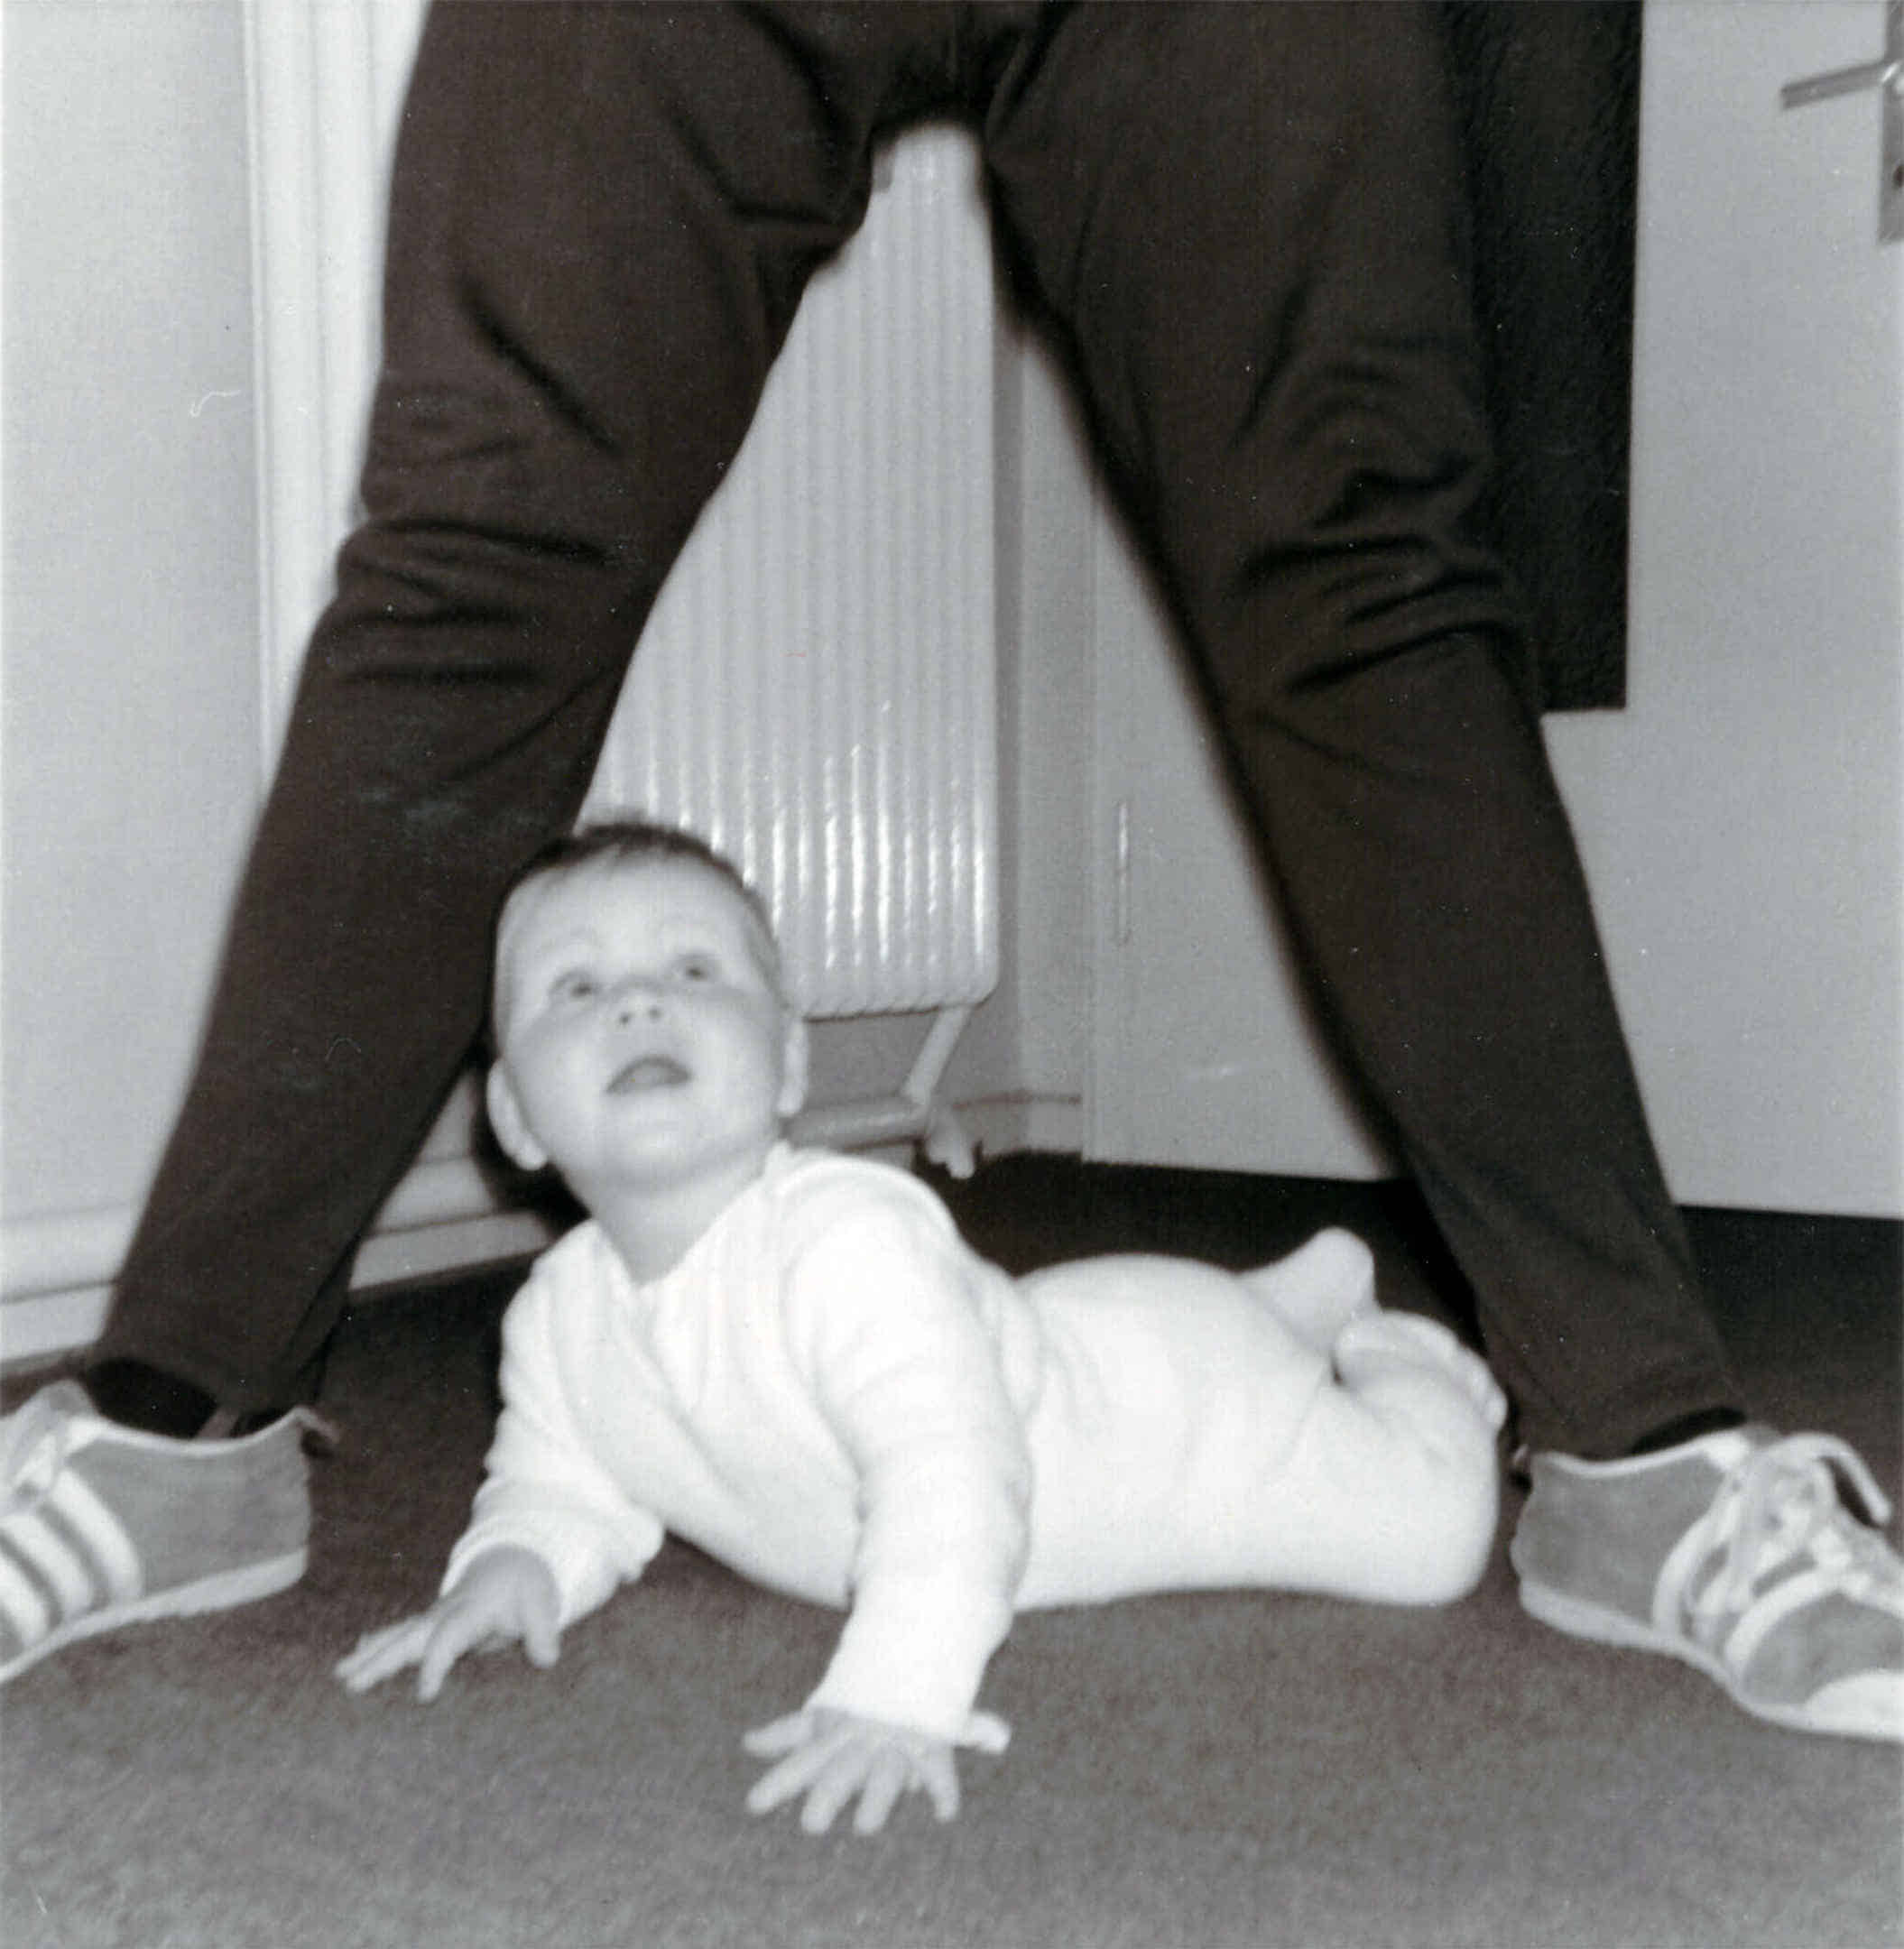 Foto: Ich blicke als Baby auf dem Boden liegend nach oben, während mein Vater mit gespreizten Beinen über mir steht.